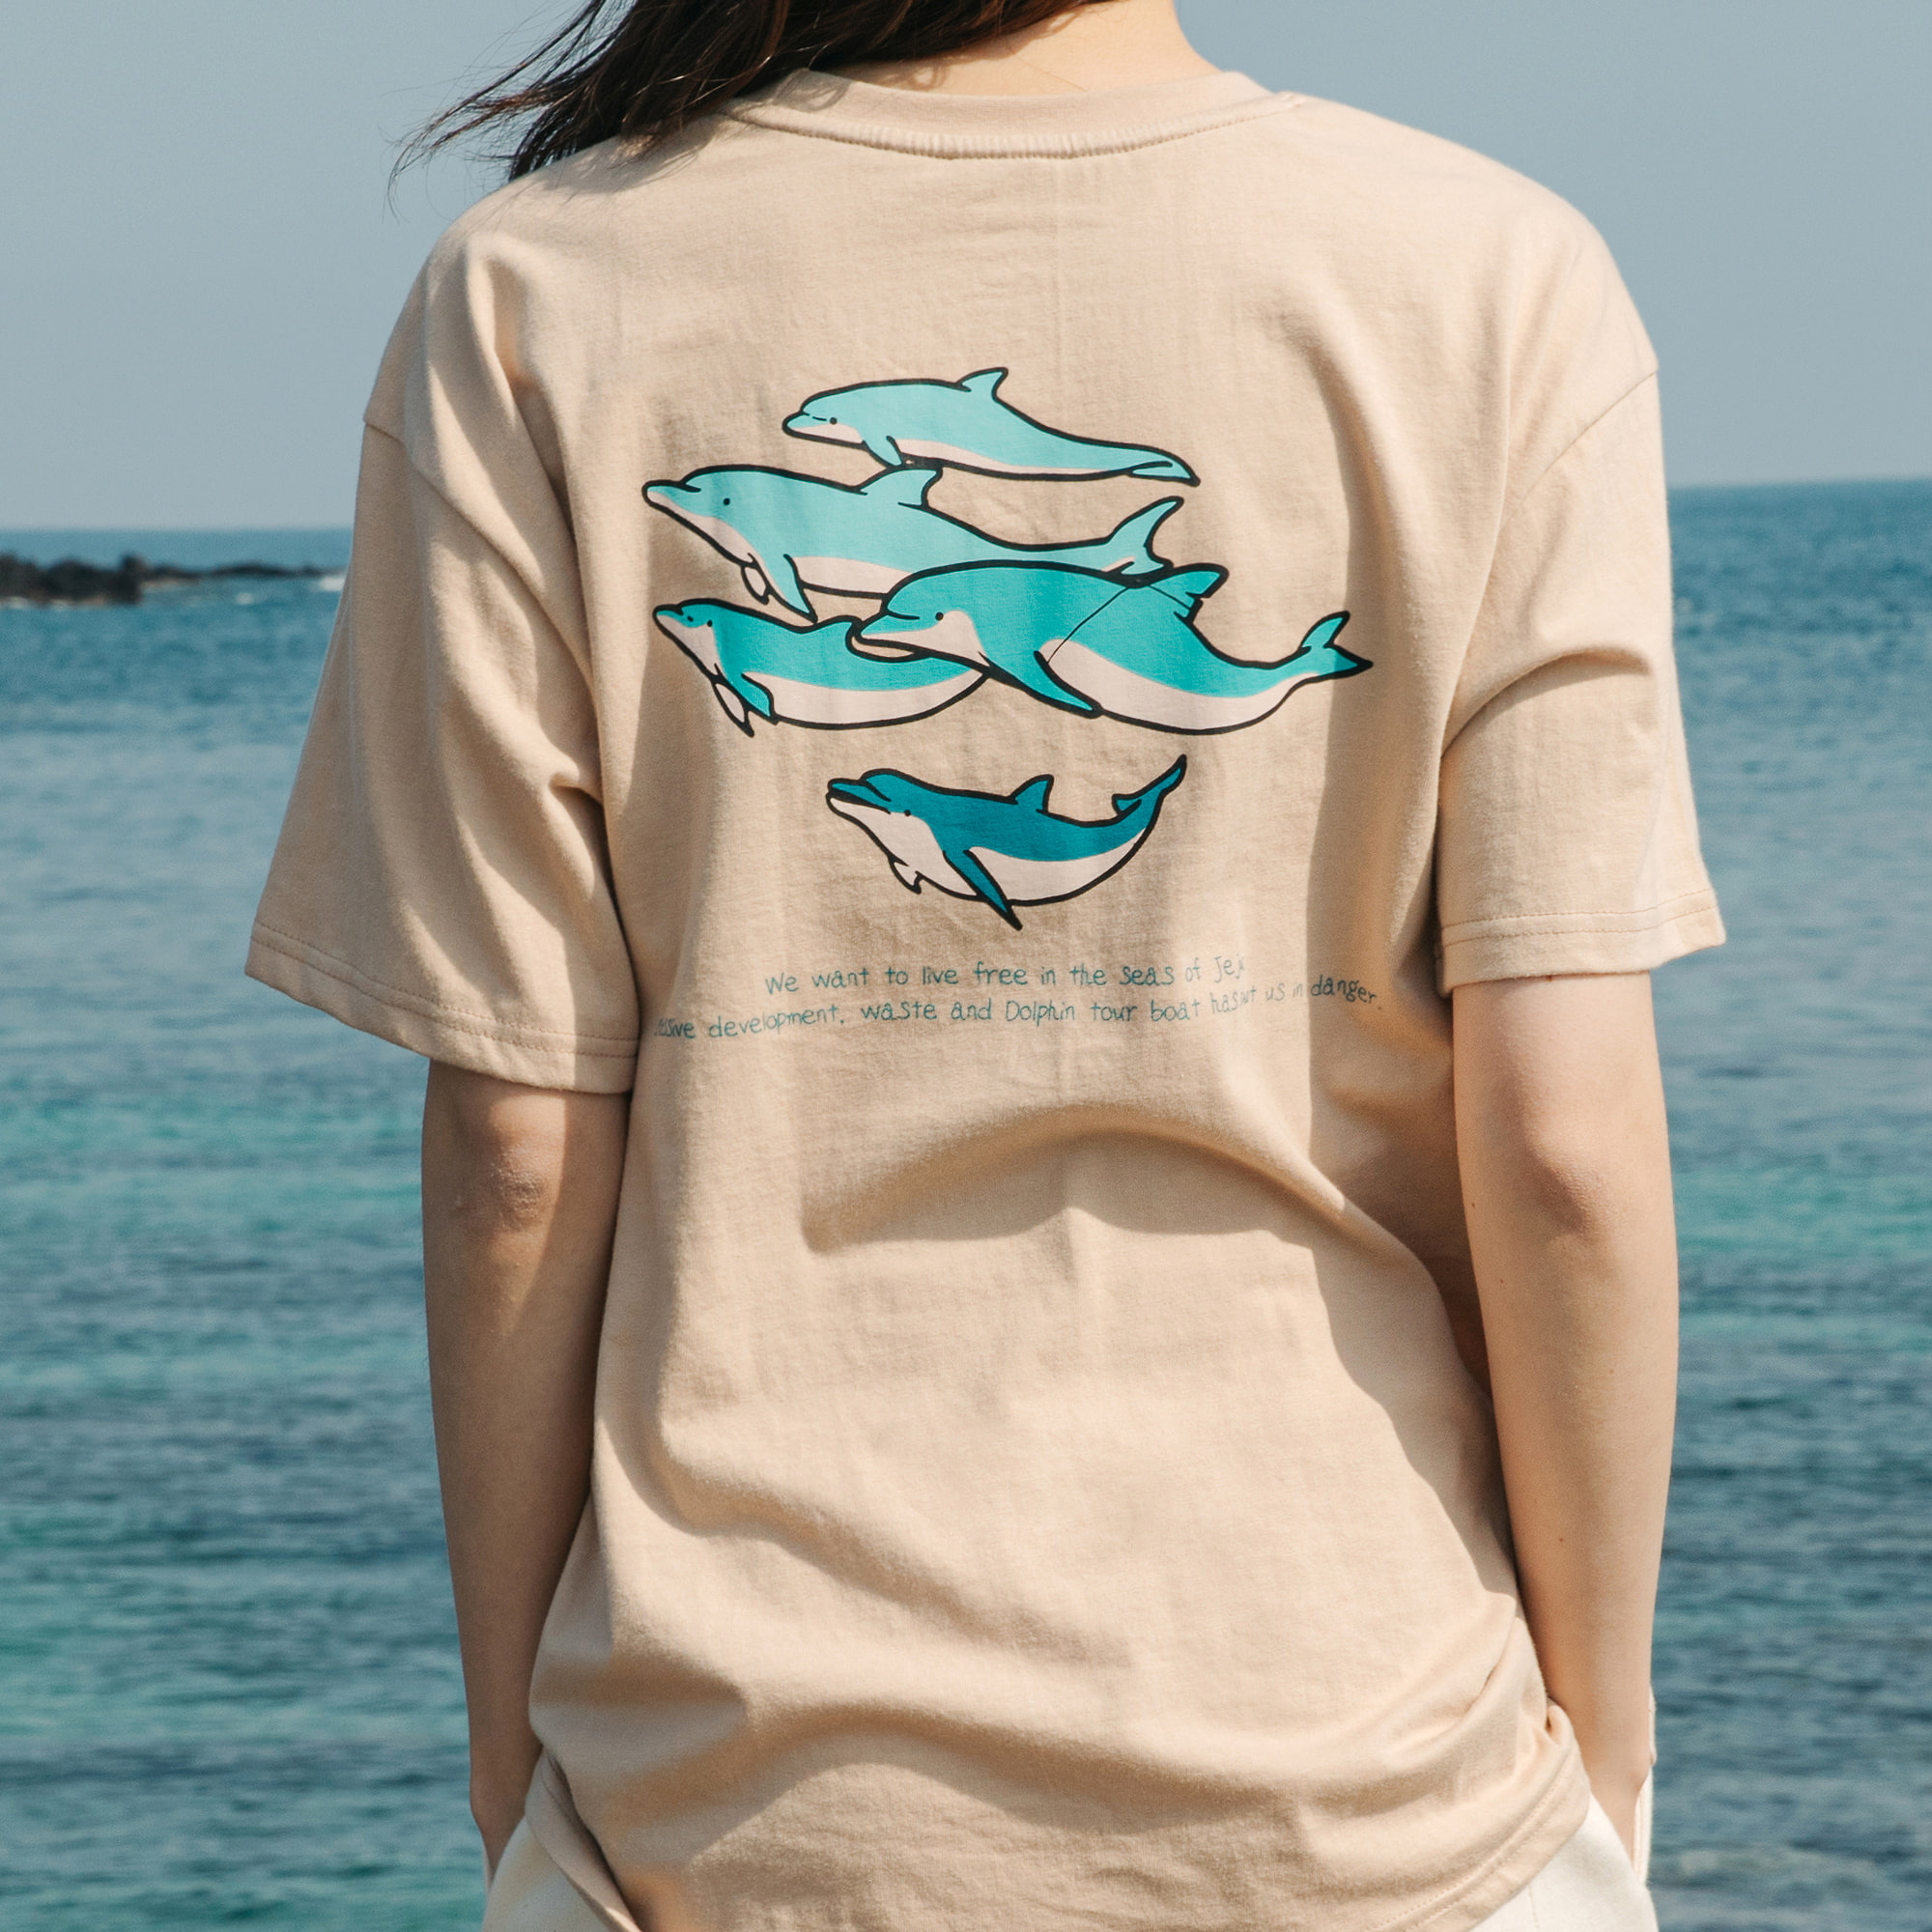 Campaign:  제주바다 기후위기를 알리는 티셔츠